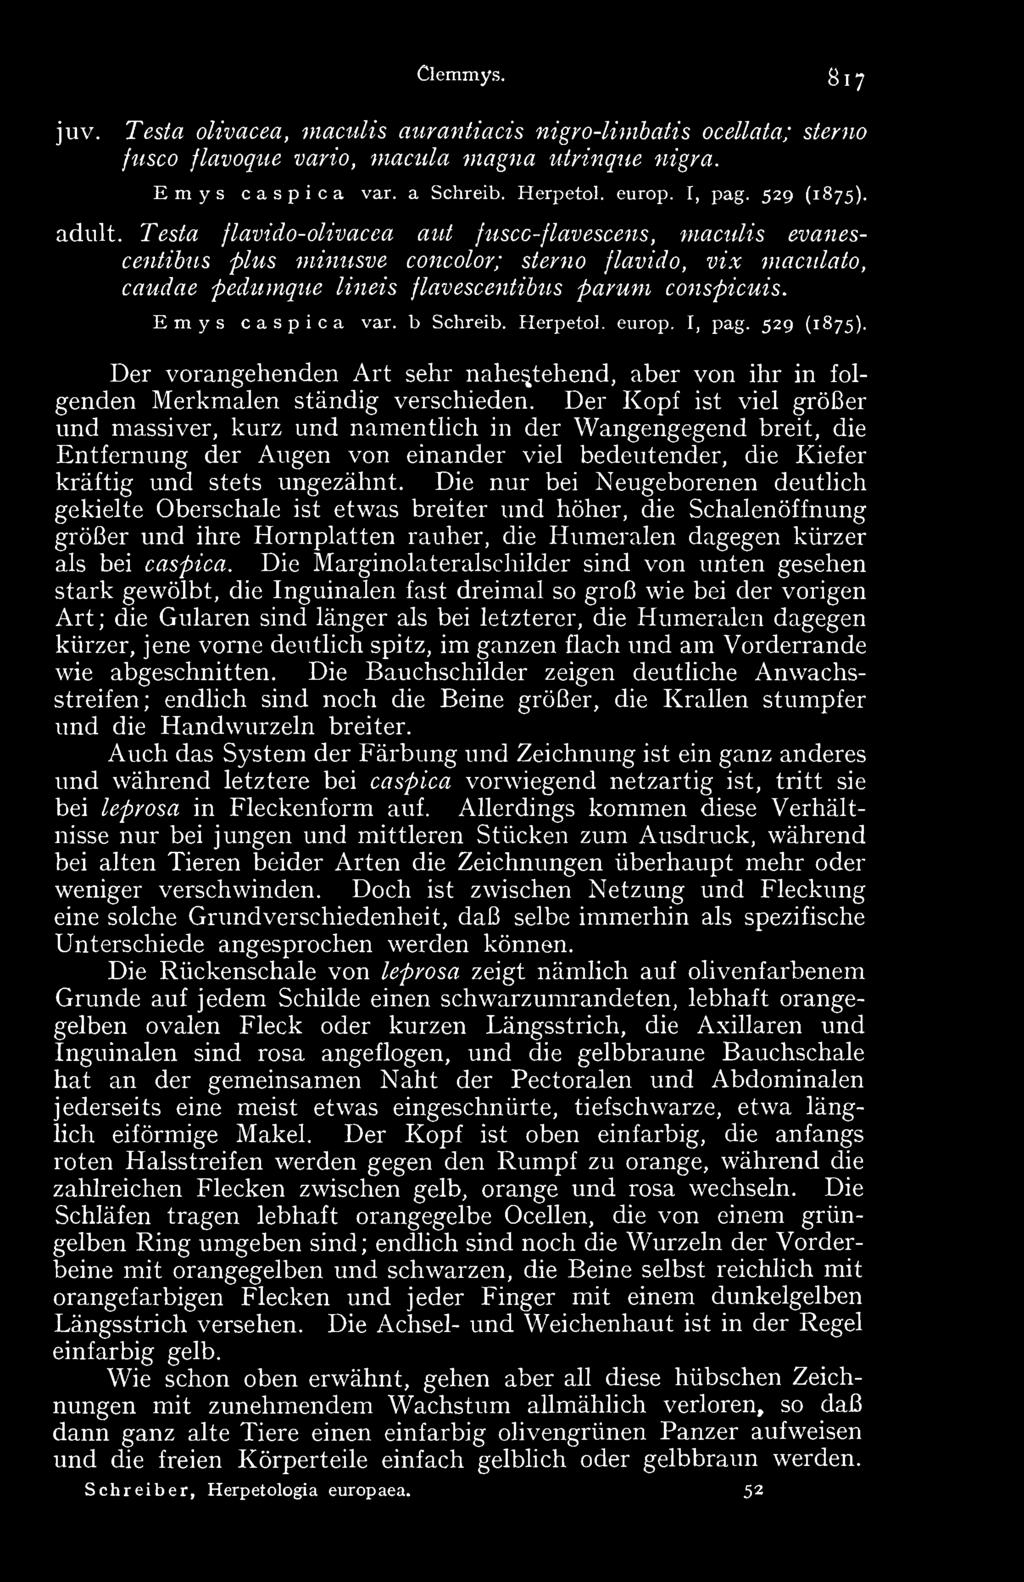 Emys caspica var. b Schreib. Herpetol. europ. I, pag. 529 (1875). Der vorangehenden Art sehr nahestehend, aber von ihr in folgenden Merkmalen ständig verschieden.